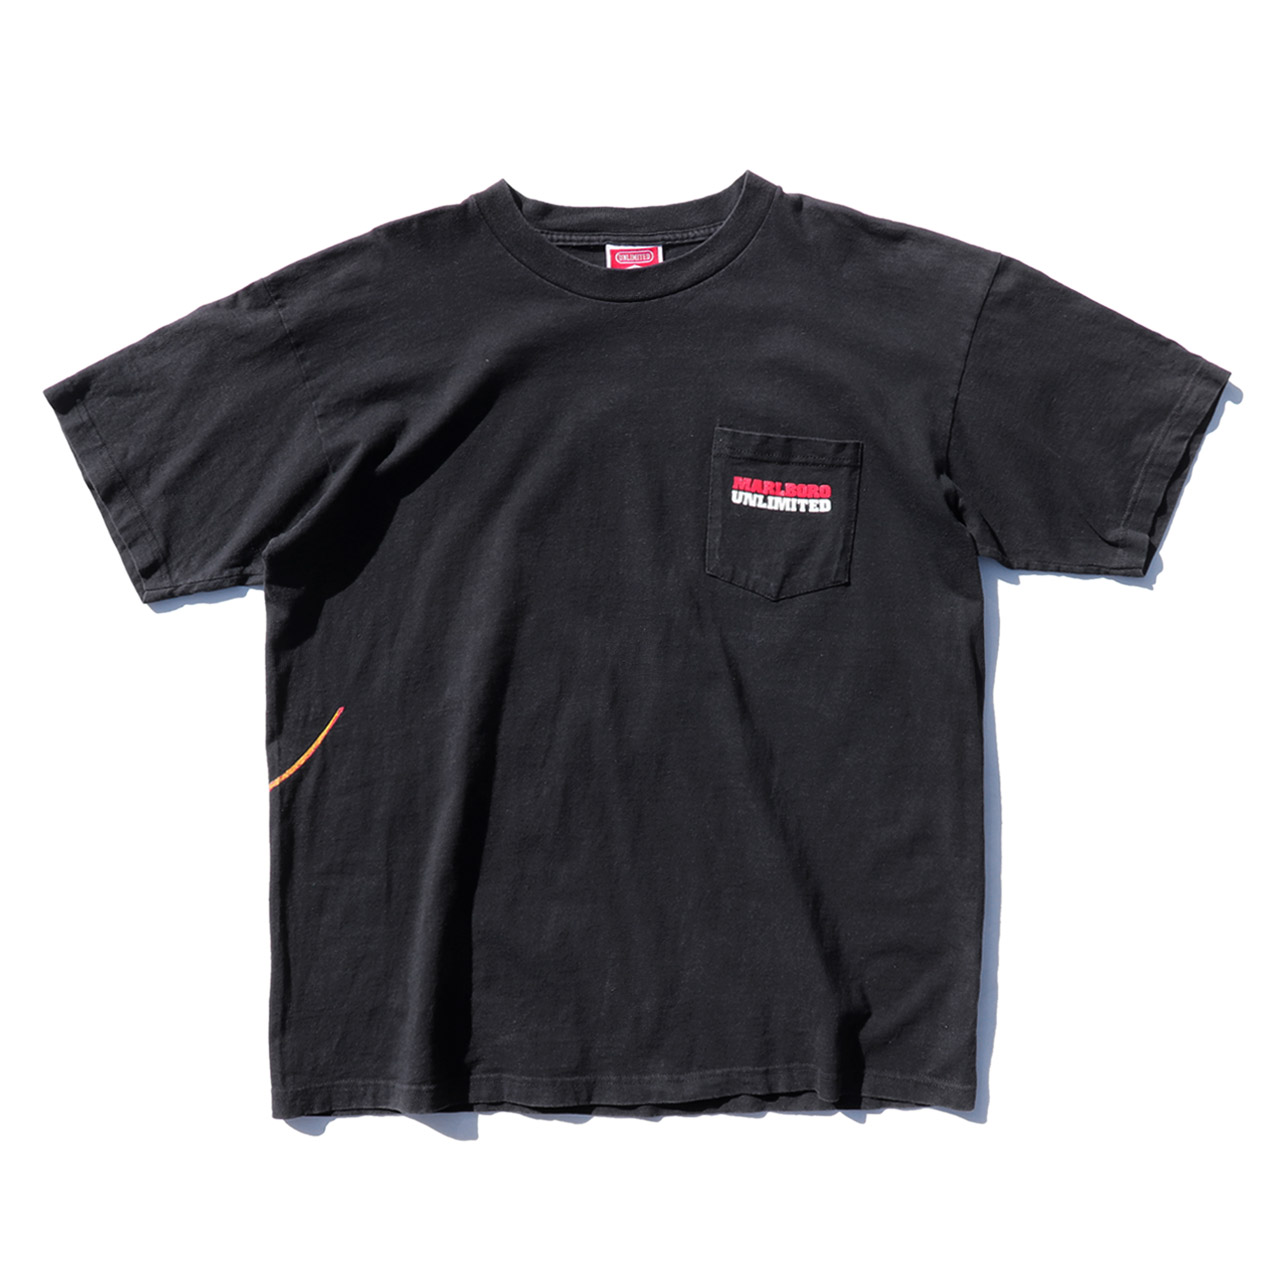 POST JUNK / 90's MARLBORO “LIZARD” Pocket T-Shirt Made In U.S.A. [XL]